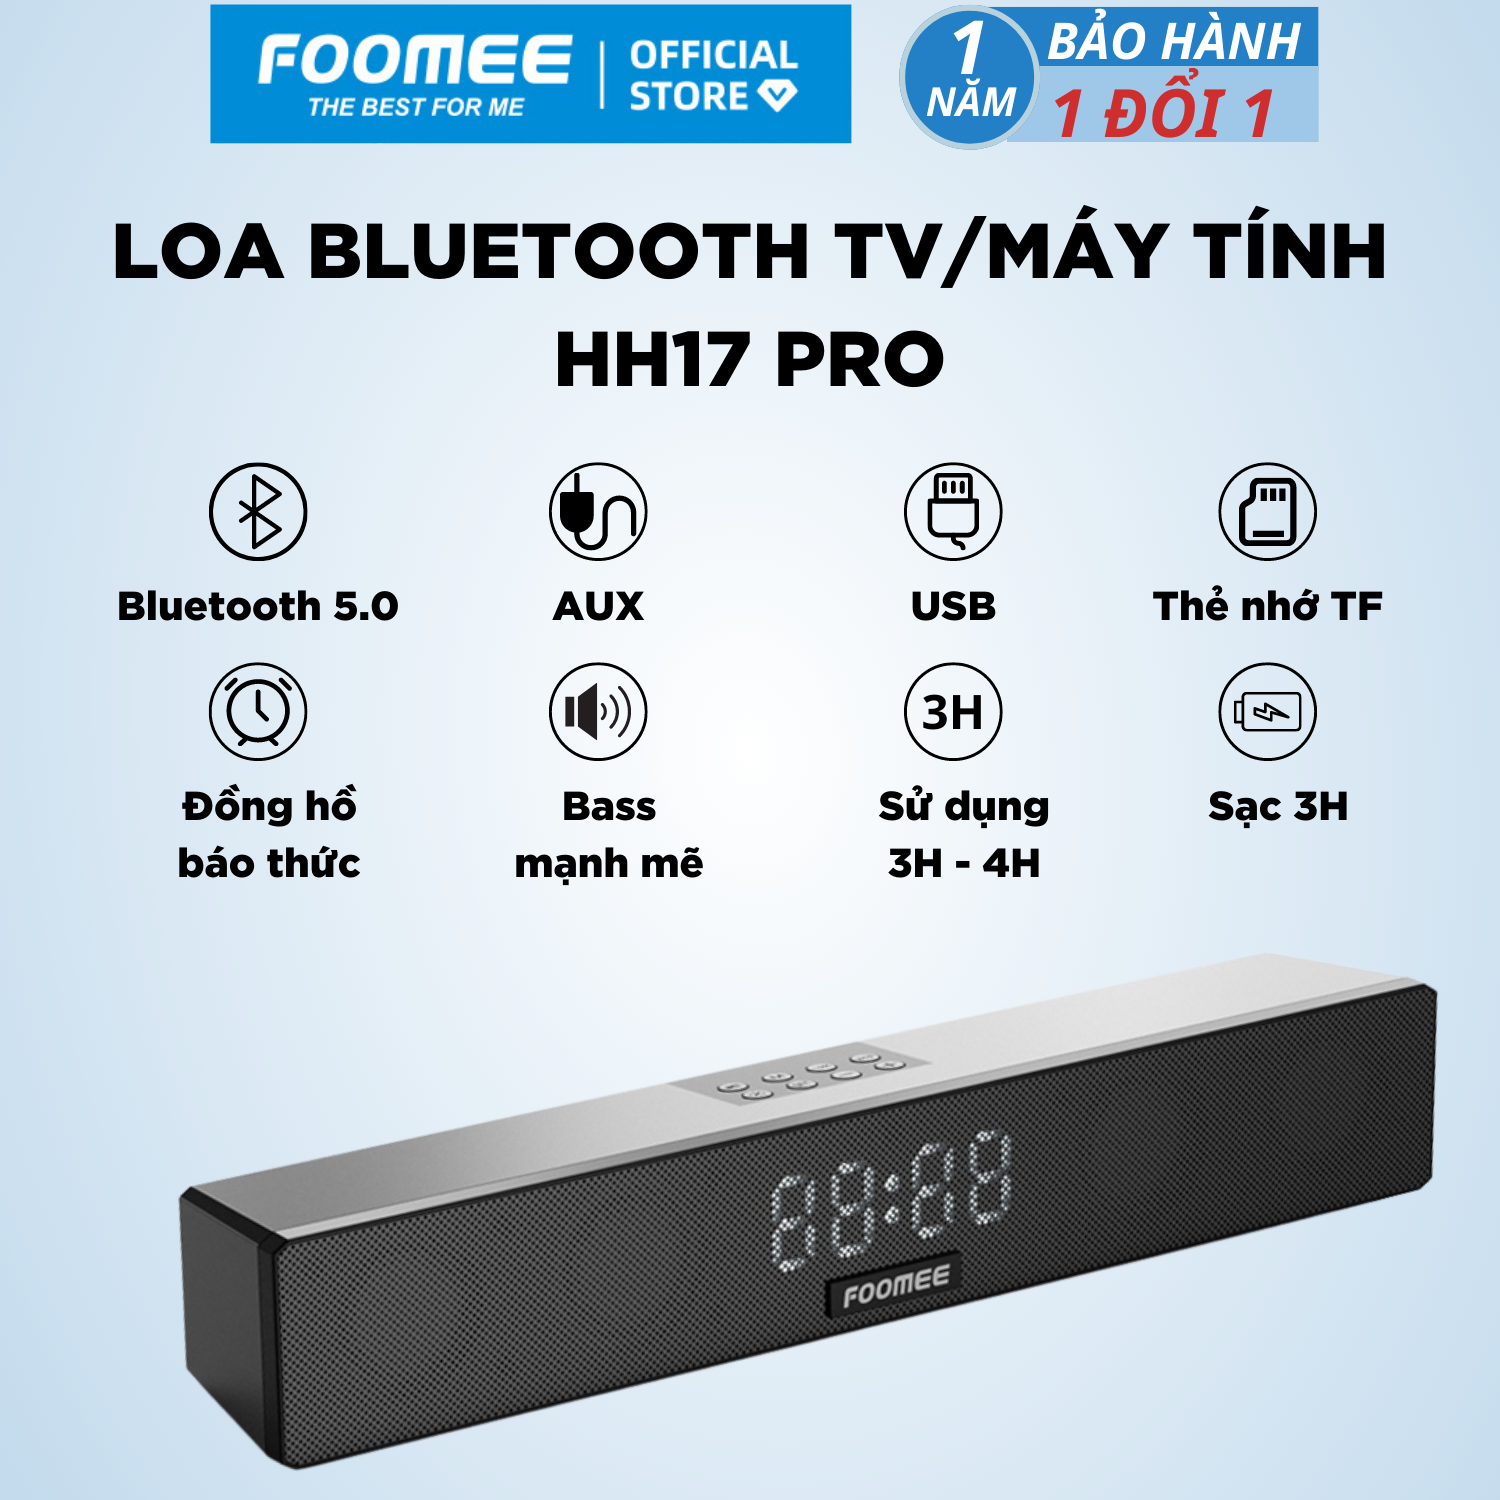 Loa Bluetooth Mini  Pin 2400mAh FOOMEE HH17 pro - Tích Hợp Đèn Led Nháy Loa Kép Và Kết Nối Cuộc Gọi - Màu Đen - Hàng Chính Hãng